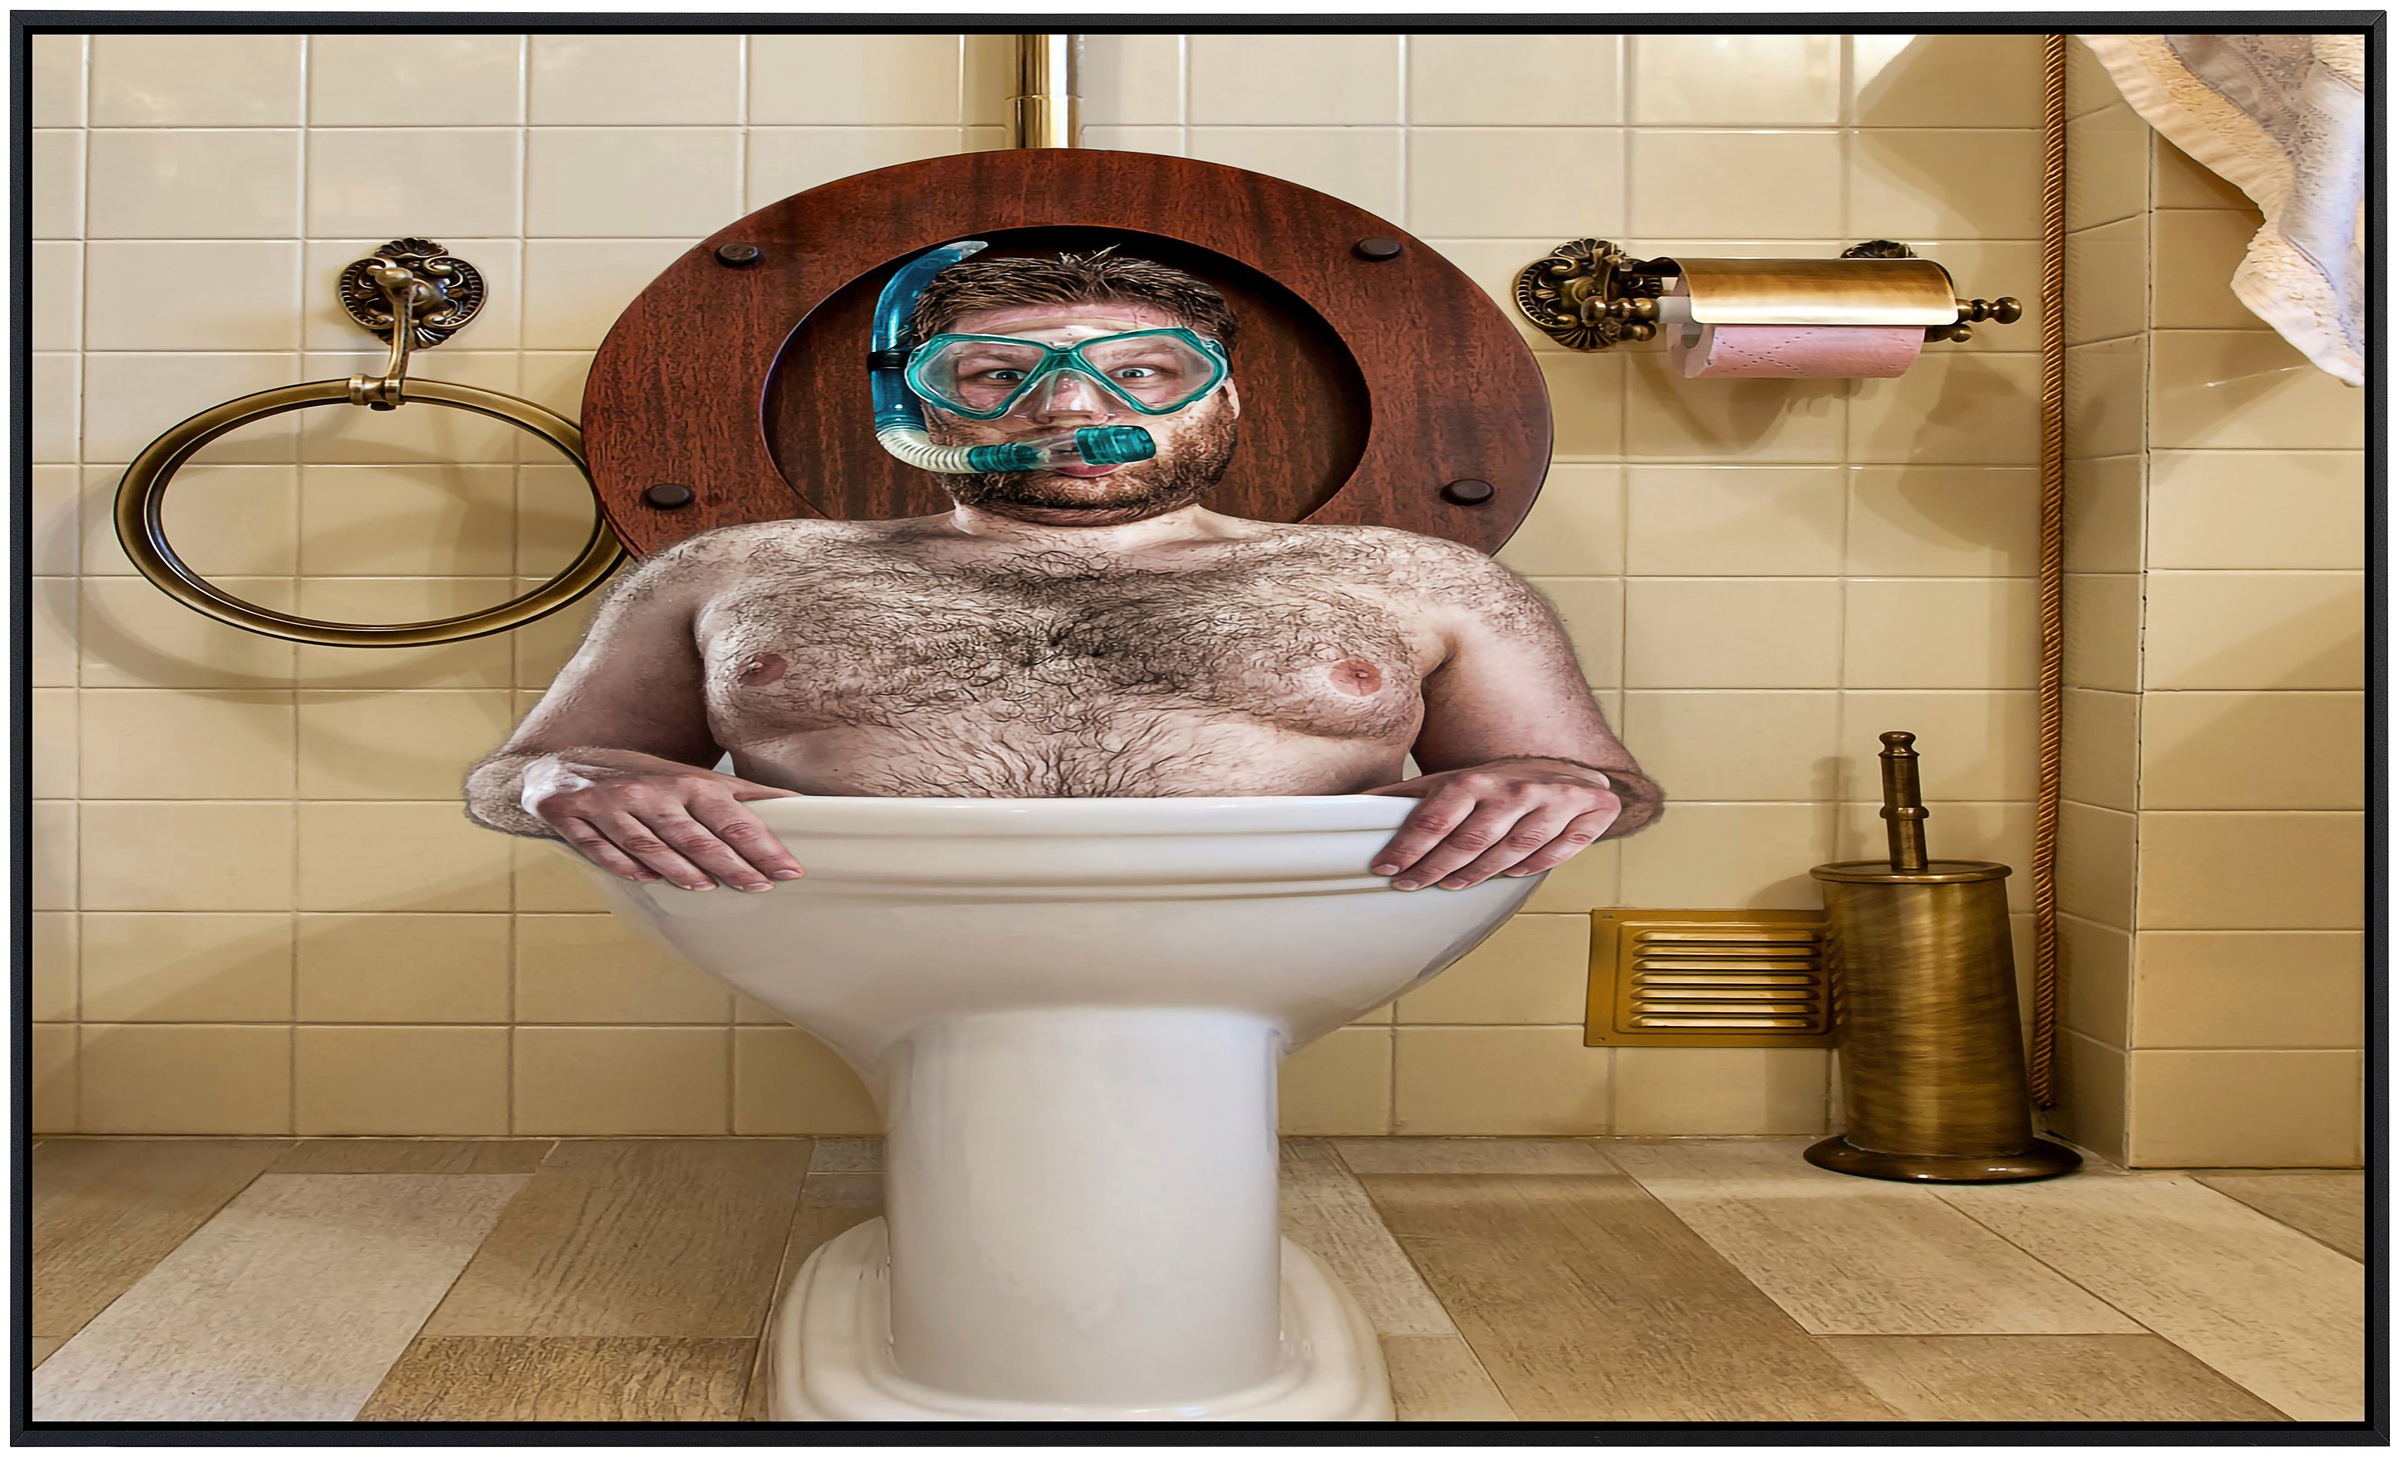 Papermoon Infrarotheizung »Mann in Toilette«, sehr angenehme Strahlungswärme